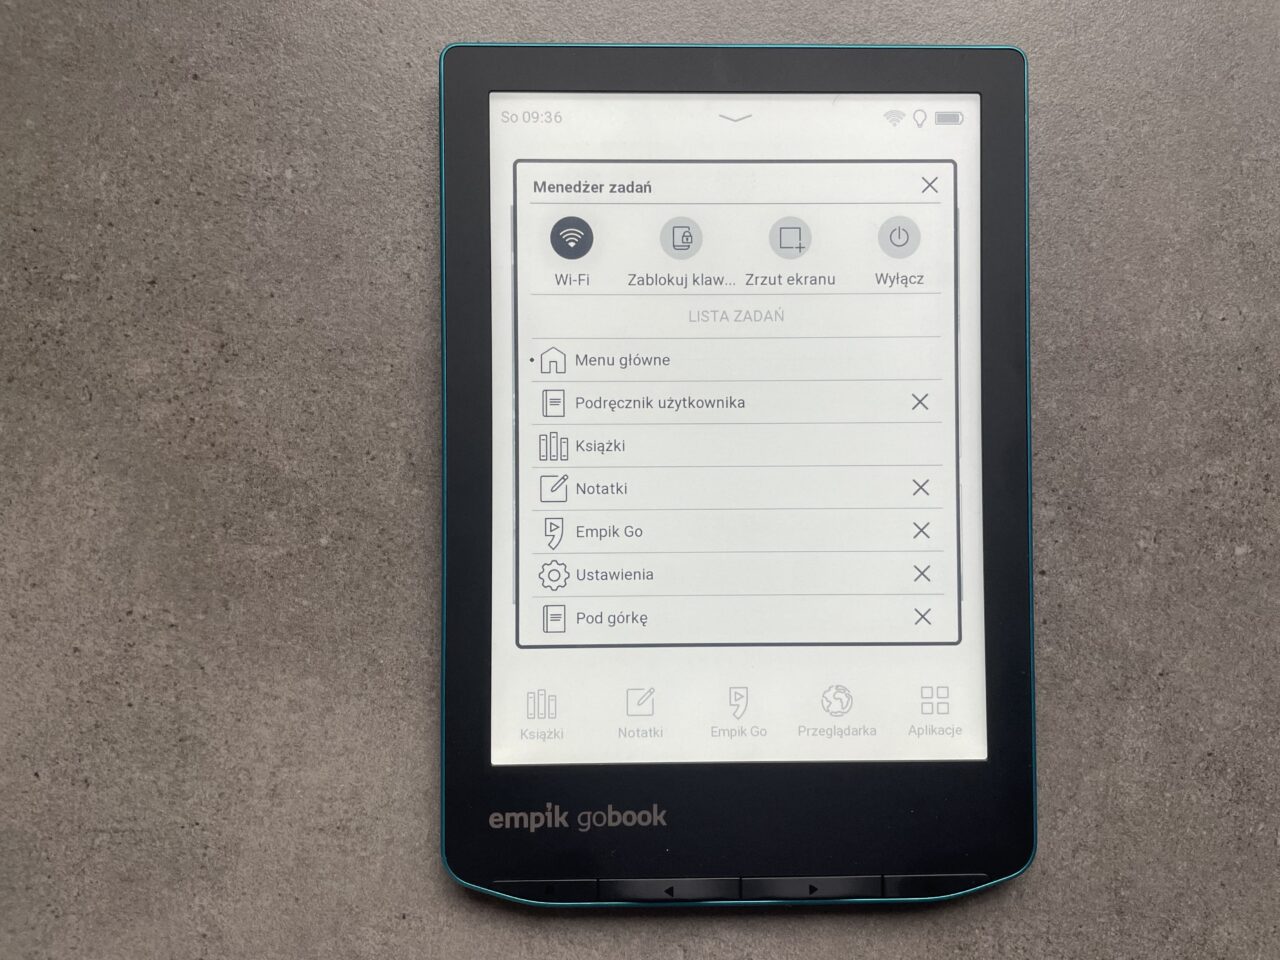 Czytnik e-booków leżący na szarym tle z otwartym ekranem menu z opcjami takimi jak Wi-Fi, Lista zadań, Ustawienia i ikonami aplikacji na dole ekranu.